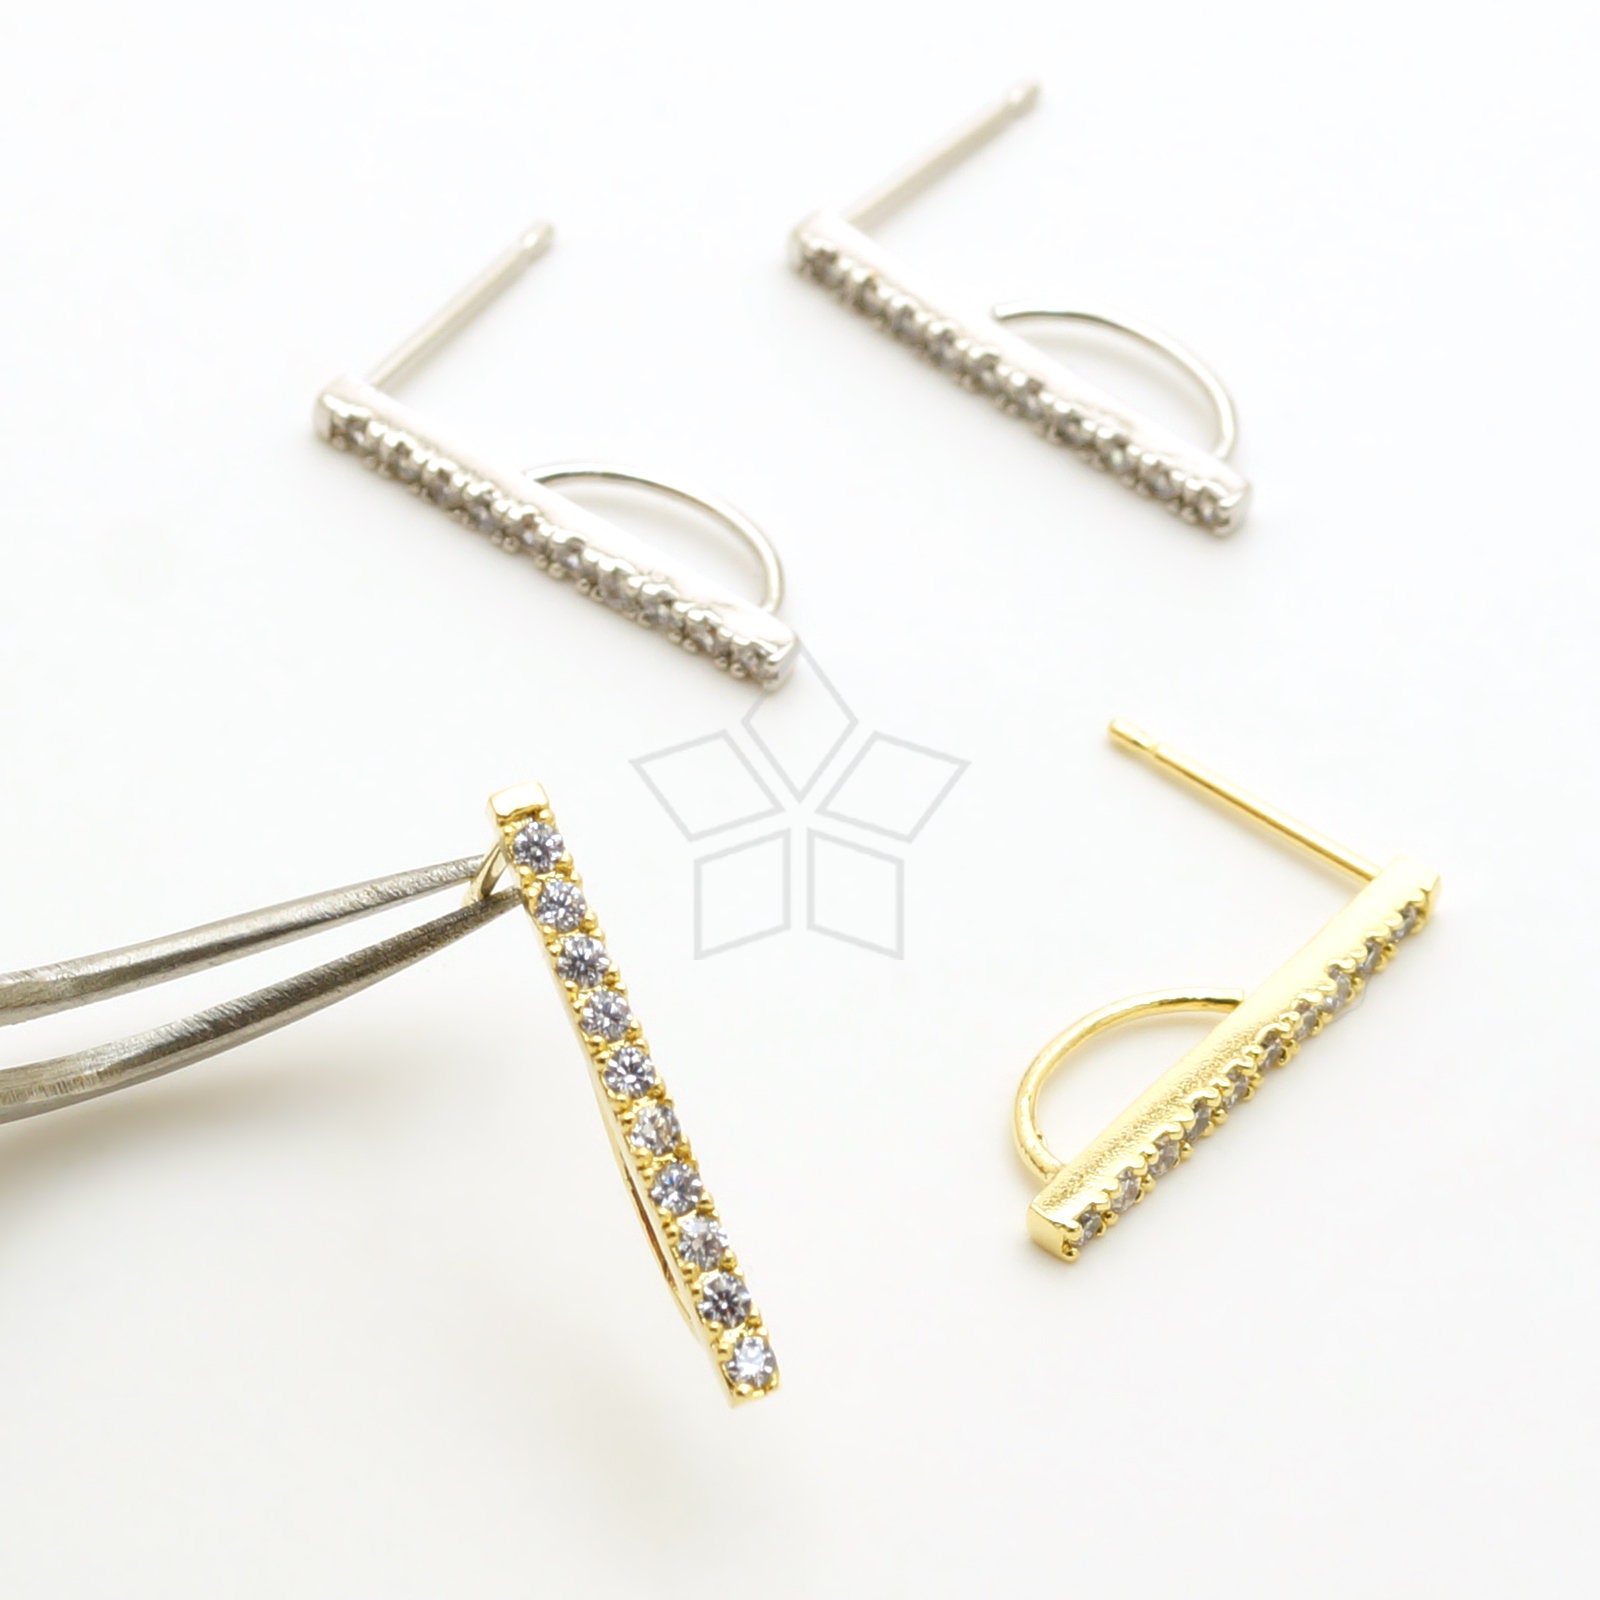 Ear Lobe Hook Earrings Rectangular Suspender Earrings J Earrings Sterling  Silver Stud Dainty Post Earrings Minimalist Studs Gift Bar 0278 